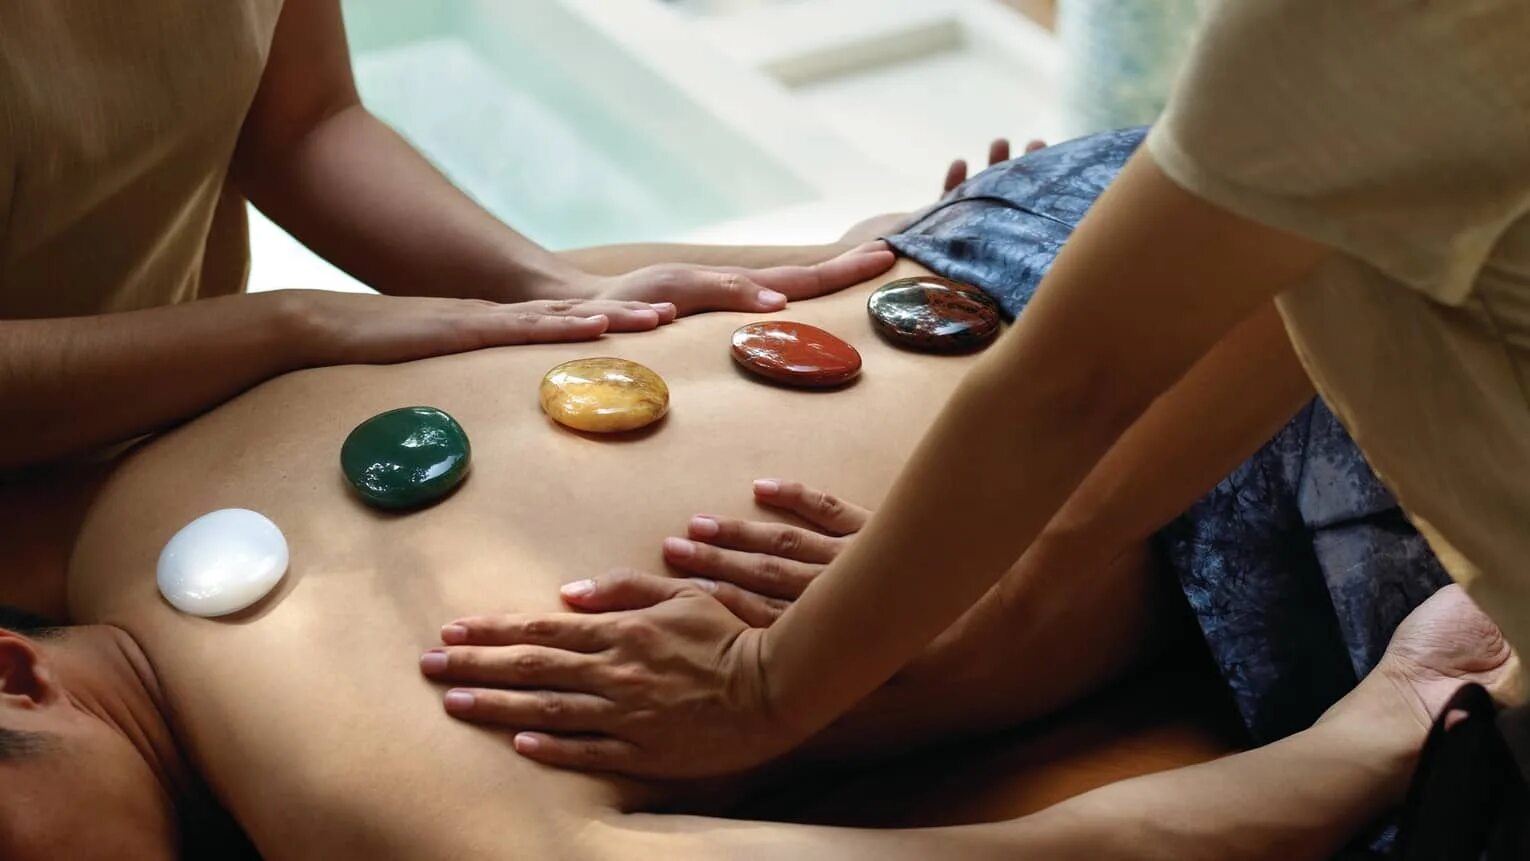 Go massage. Литотерапия (камнелечение). Камни массажные. Массаж камнями. Массаж драгоценными камнями.